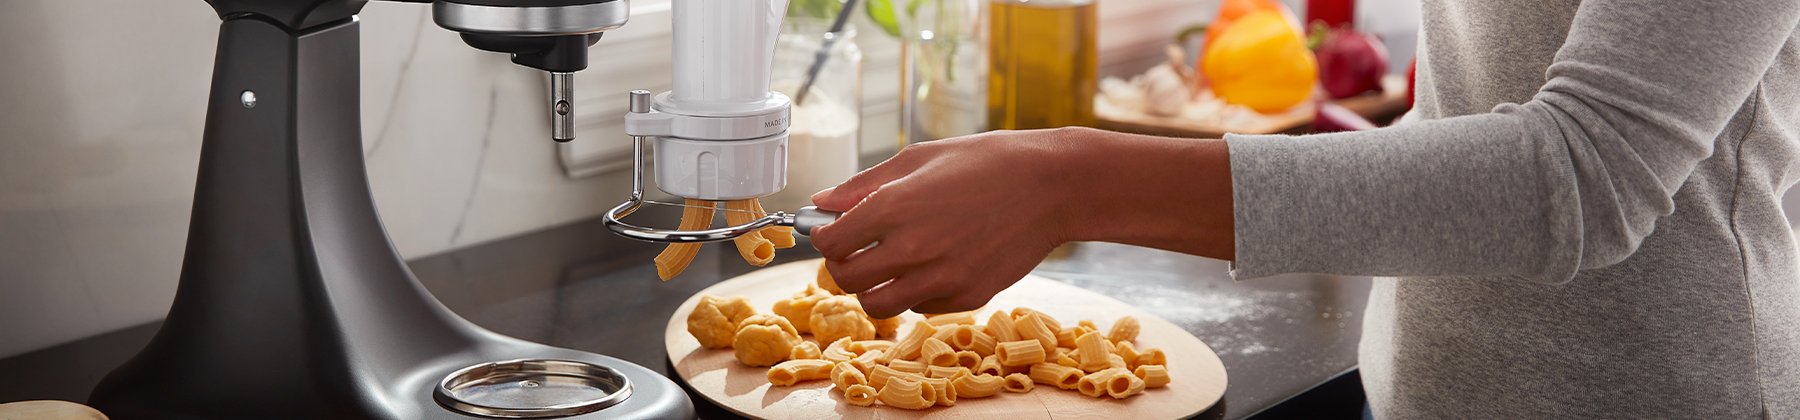 Pasta Maker Deluxe Set by Cucina Pro -Includes Spaghetti Fettucini Angel Hair Ravioli Lasagnette Attachments